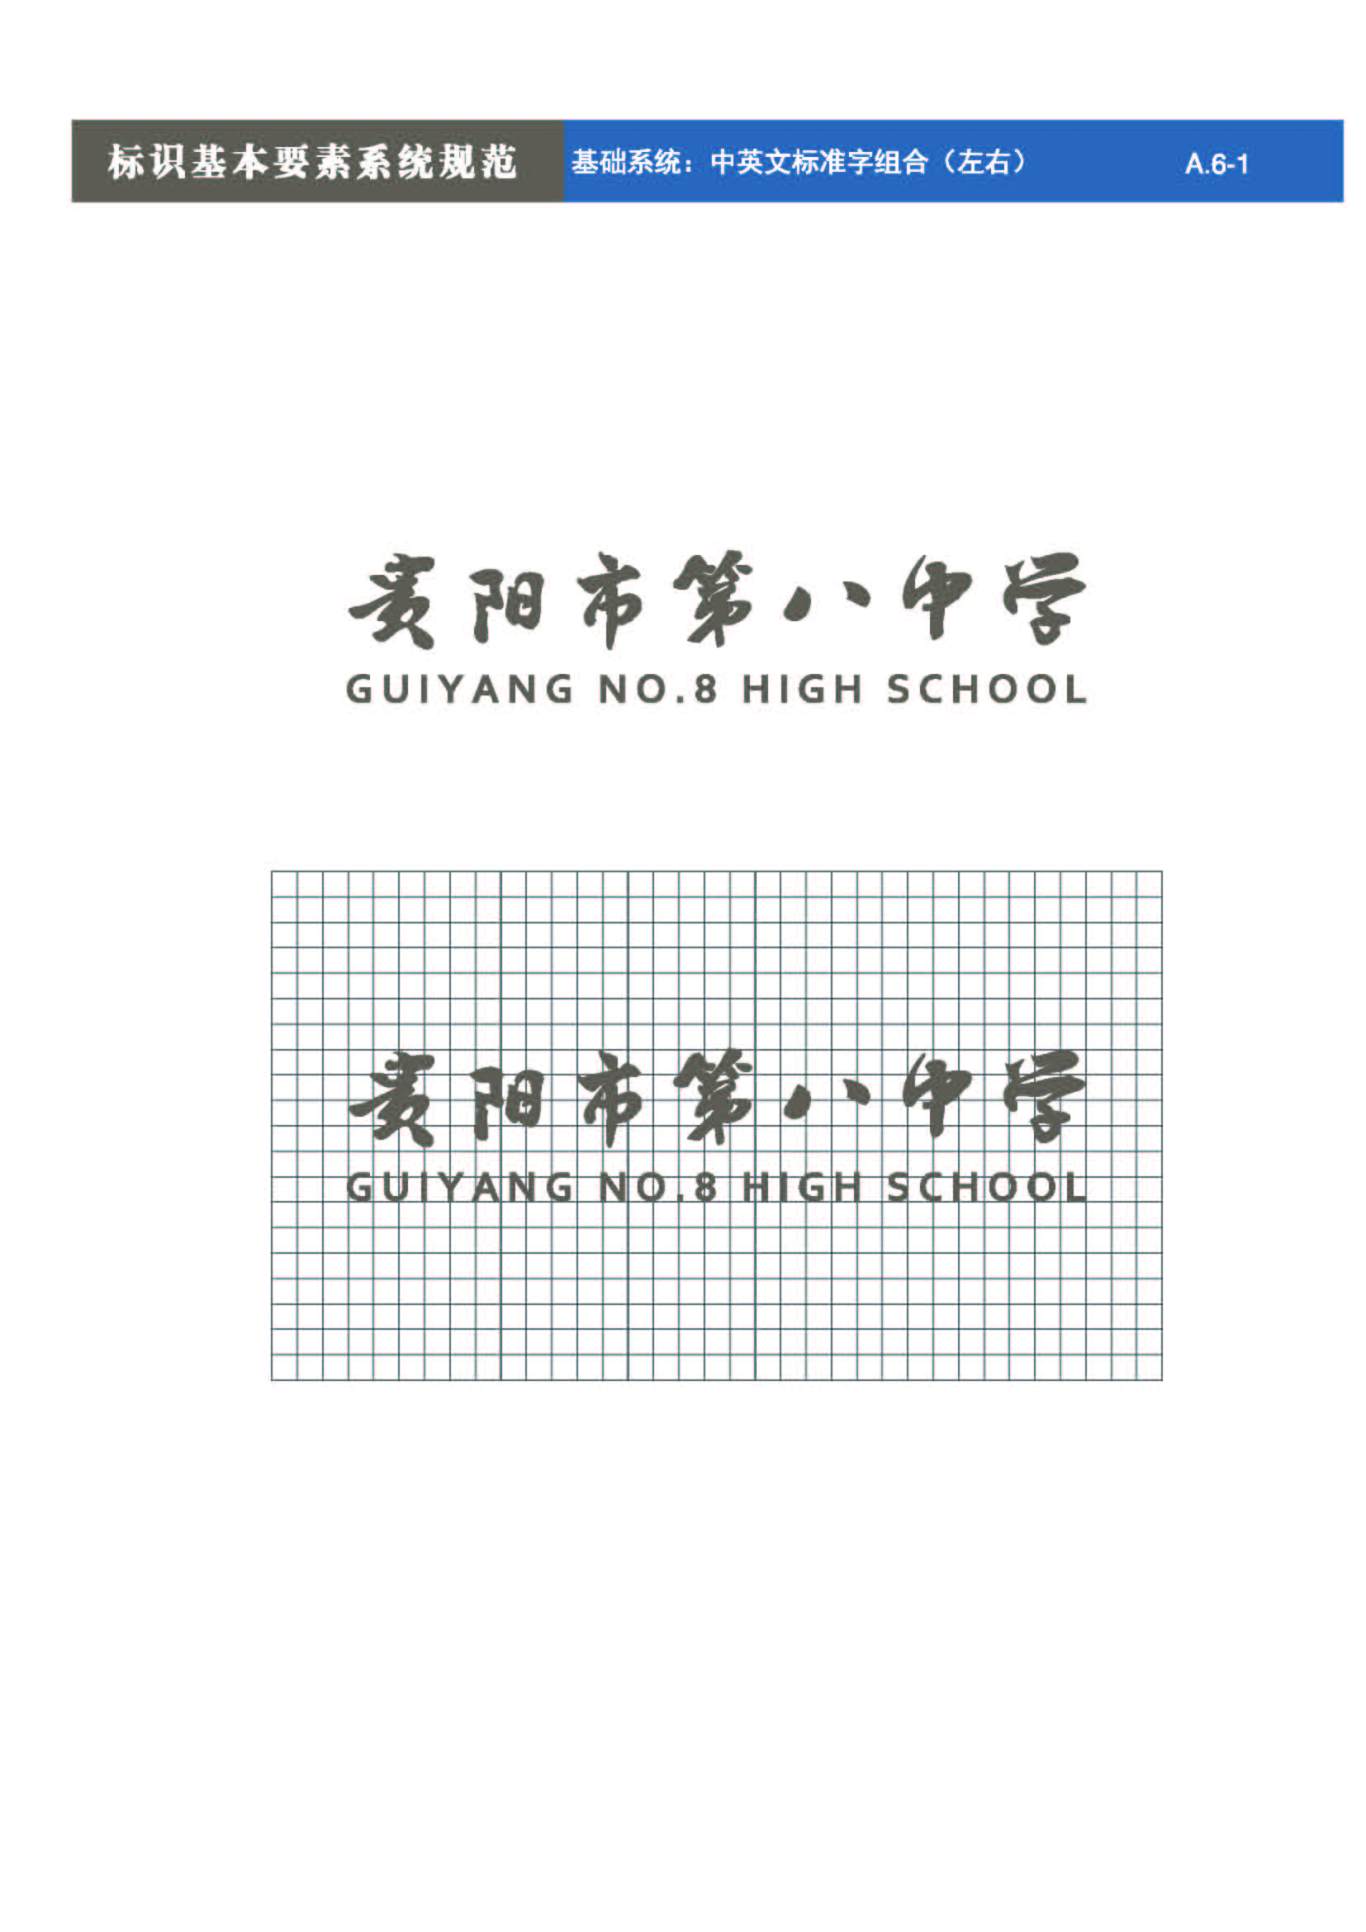 貴陽第八中學Logo、VIS設計圖17